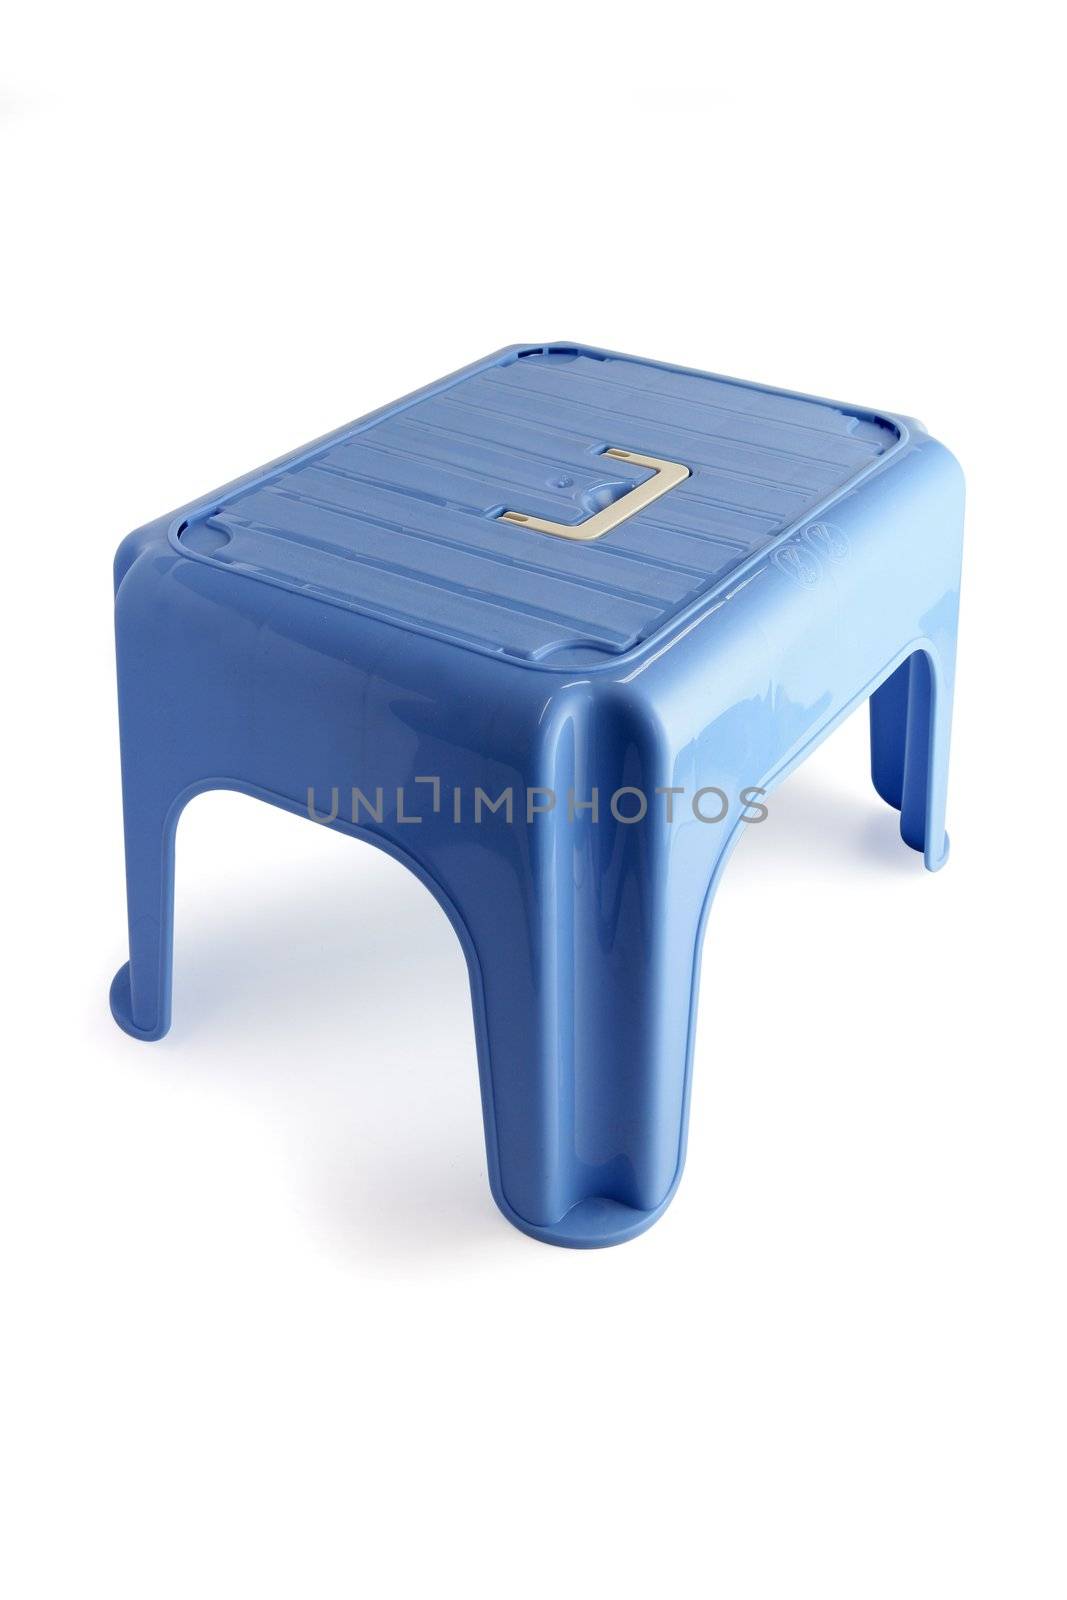 Plastic stool for children by phovoir